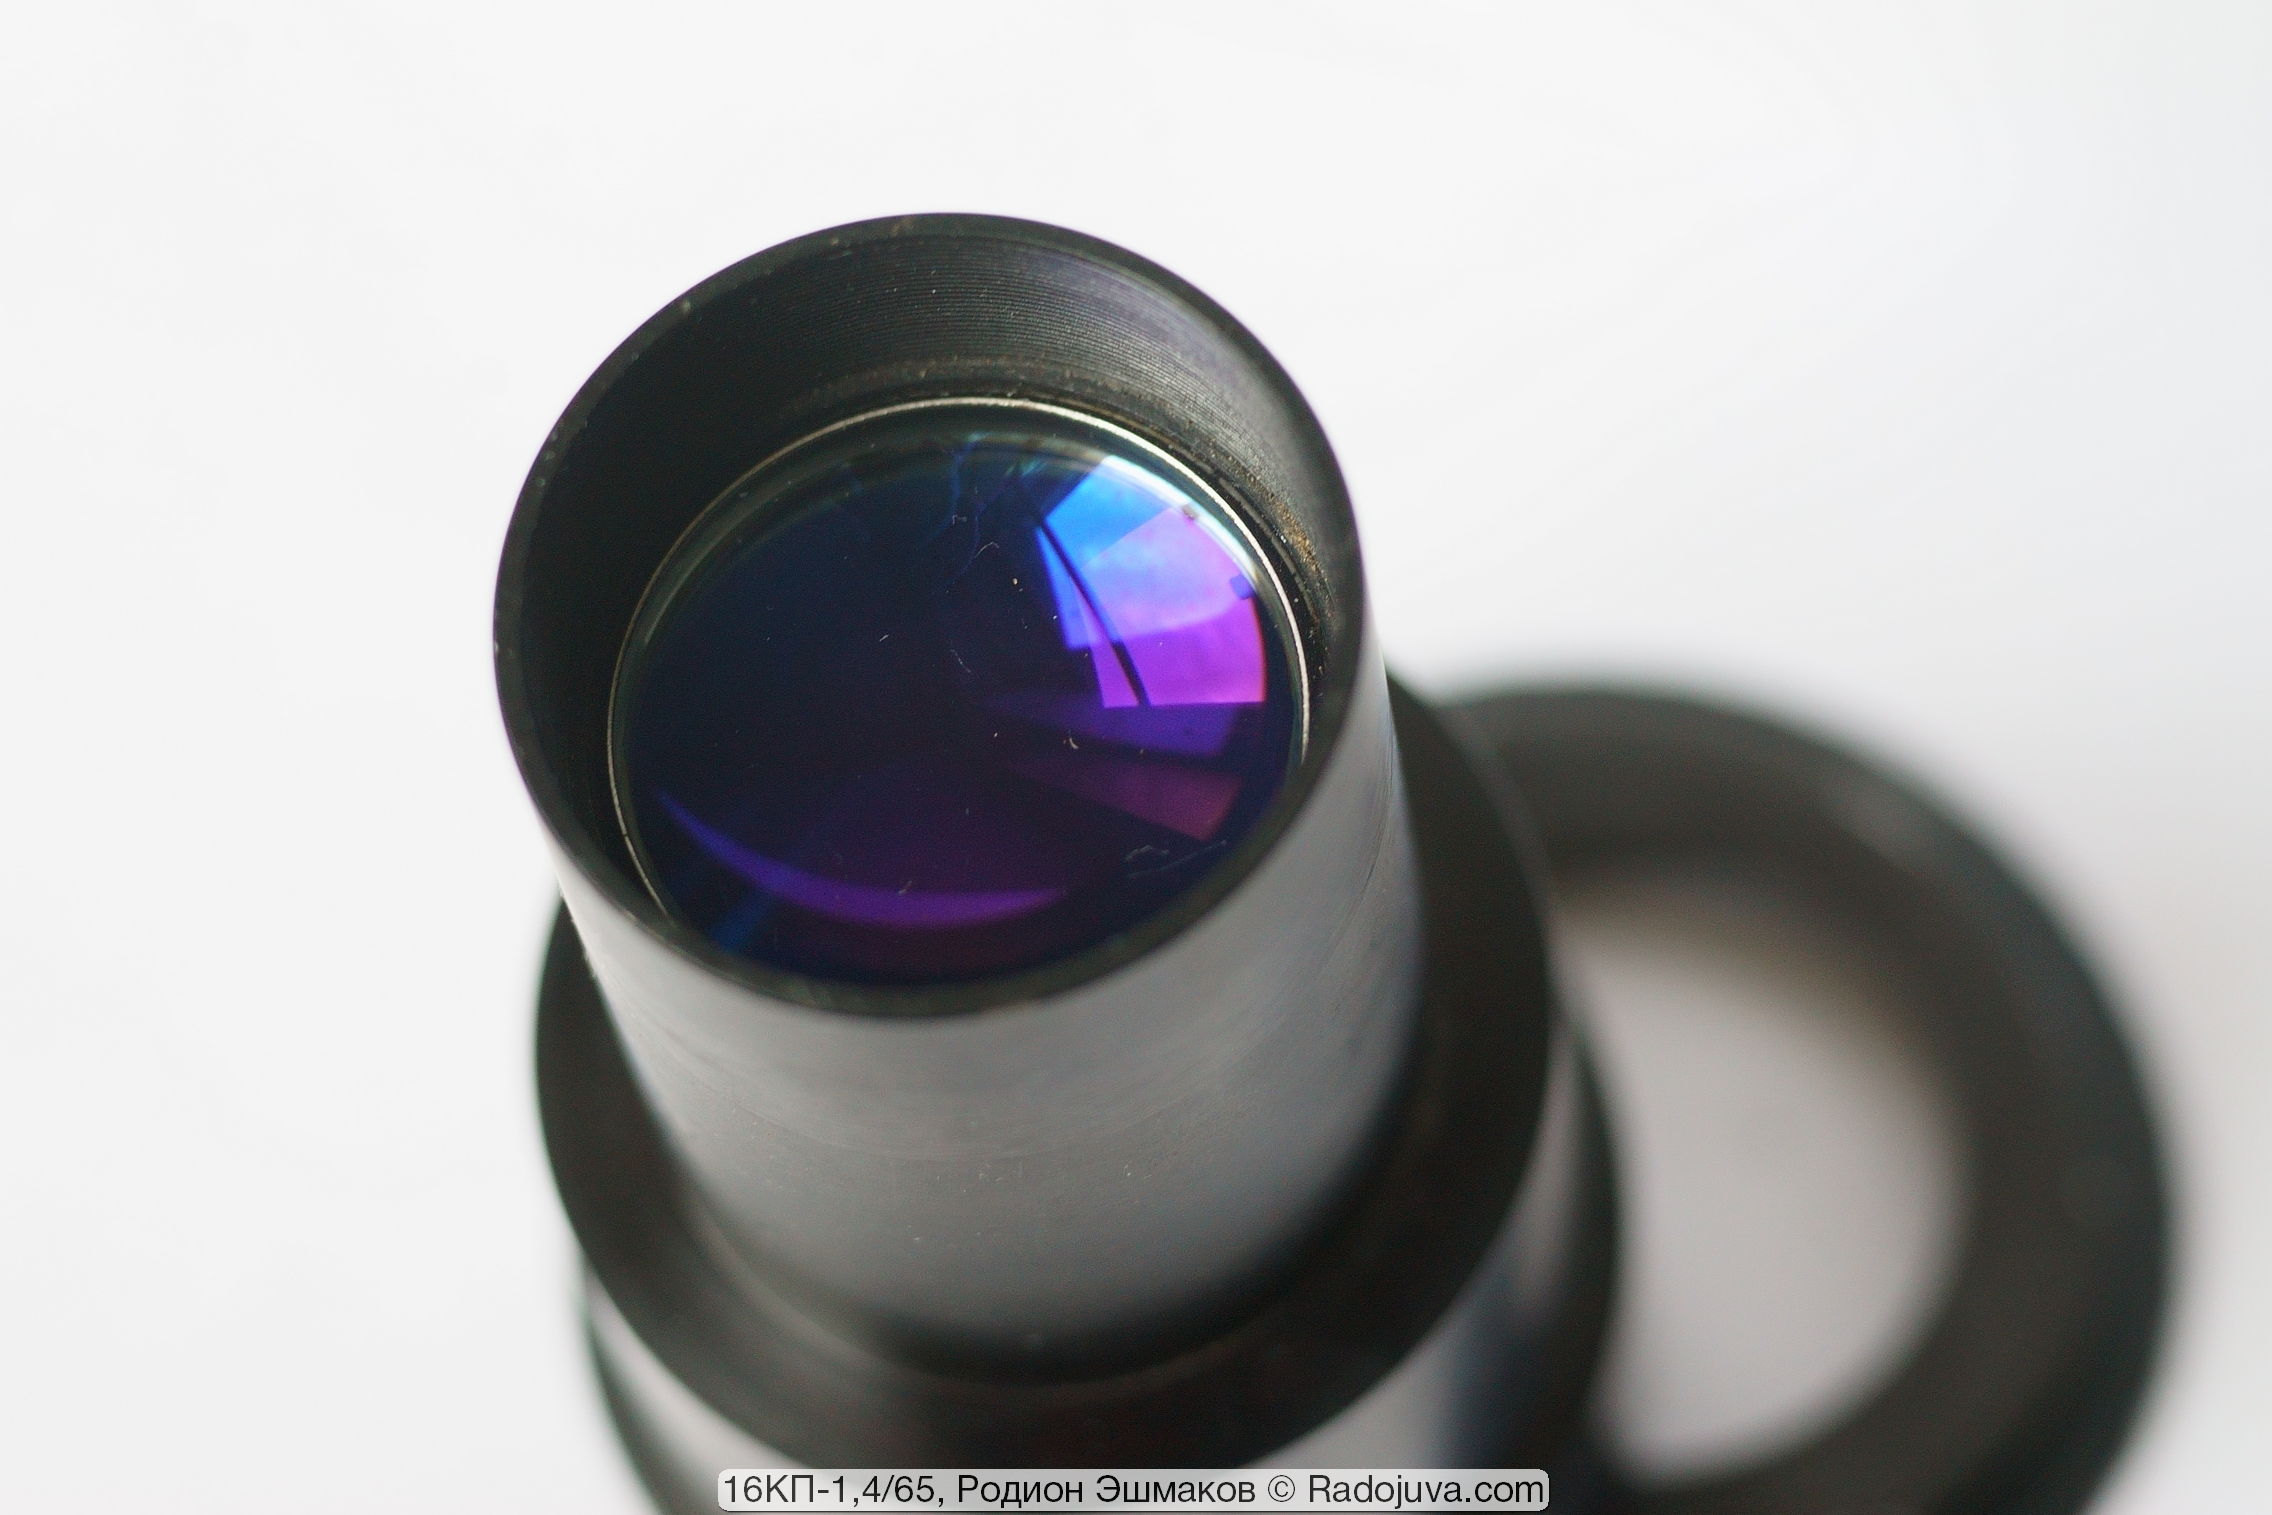 Recubrimiento azul violeta de la lente trasera de la lente.